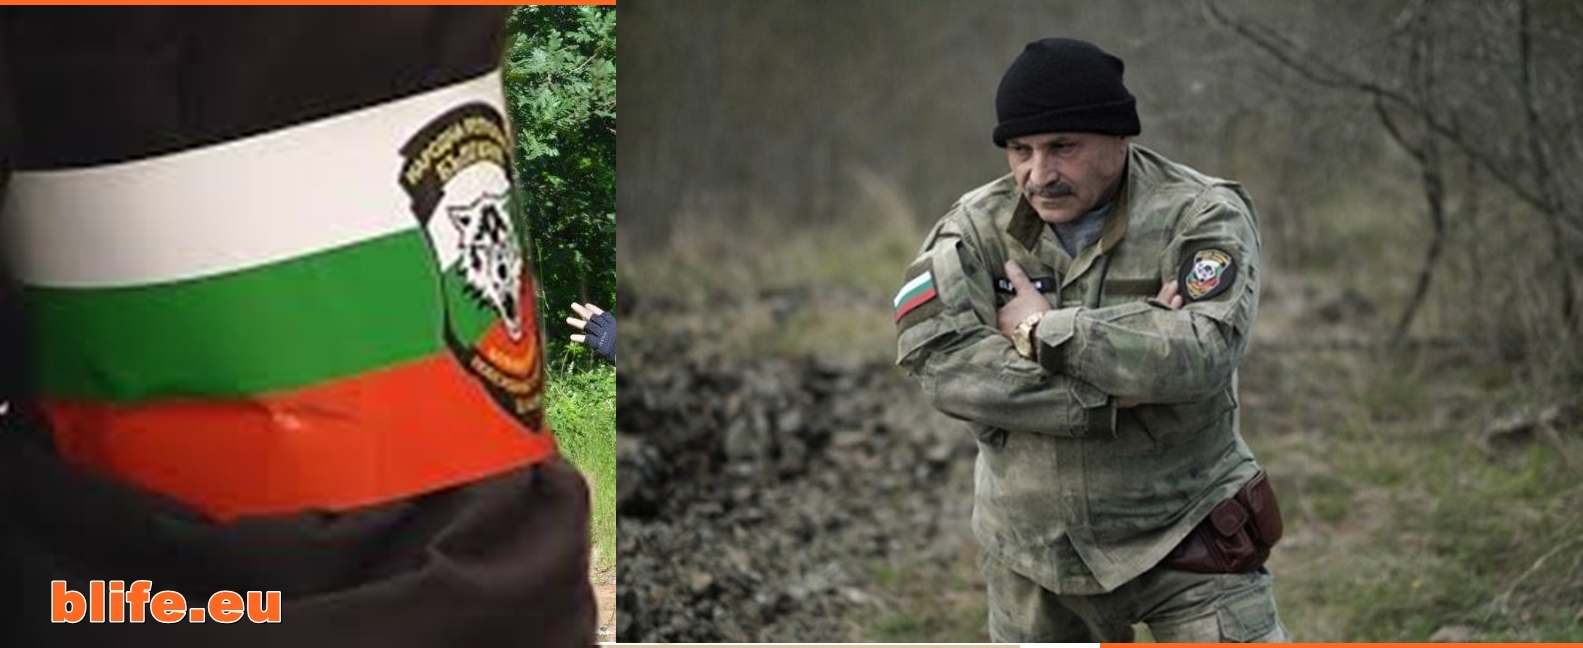 Изключителен репортаж на световна медия относно българските доброволчески патрули! Сподели за България!